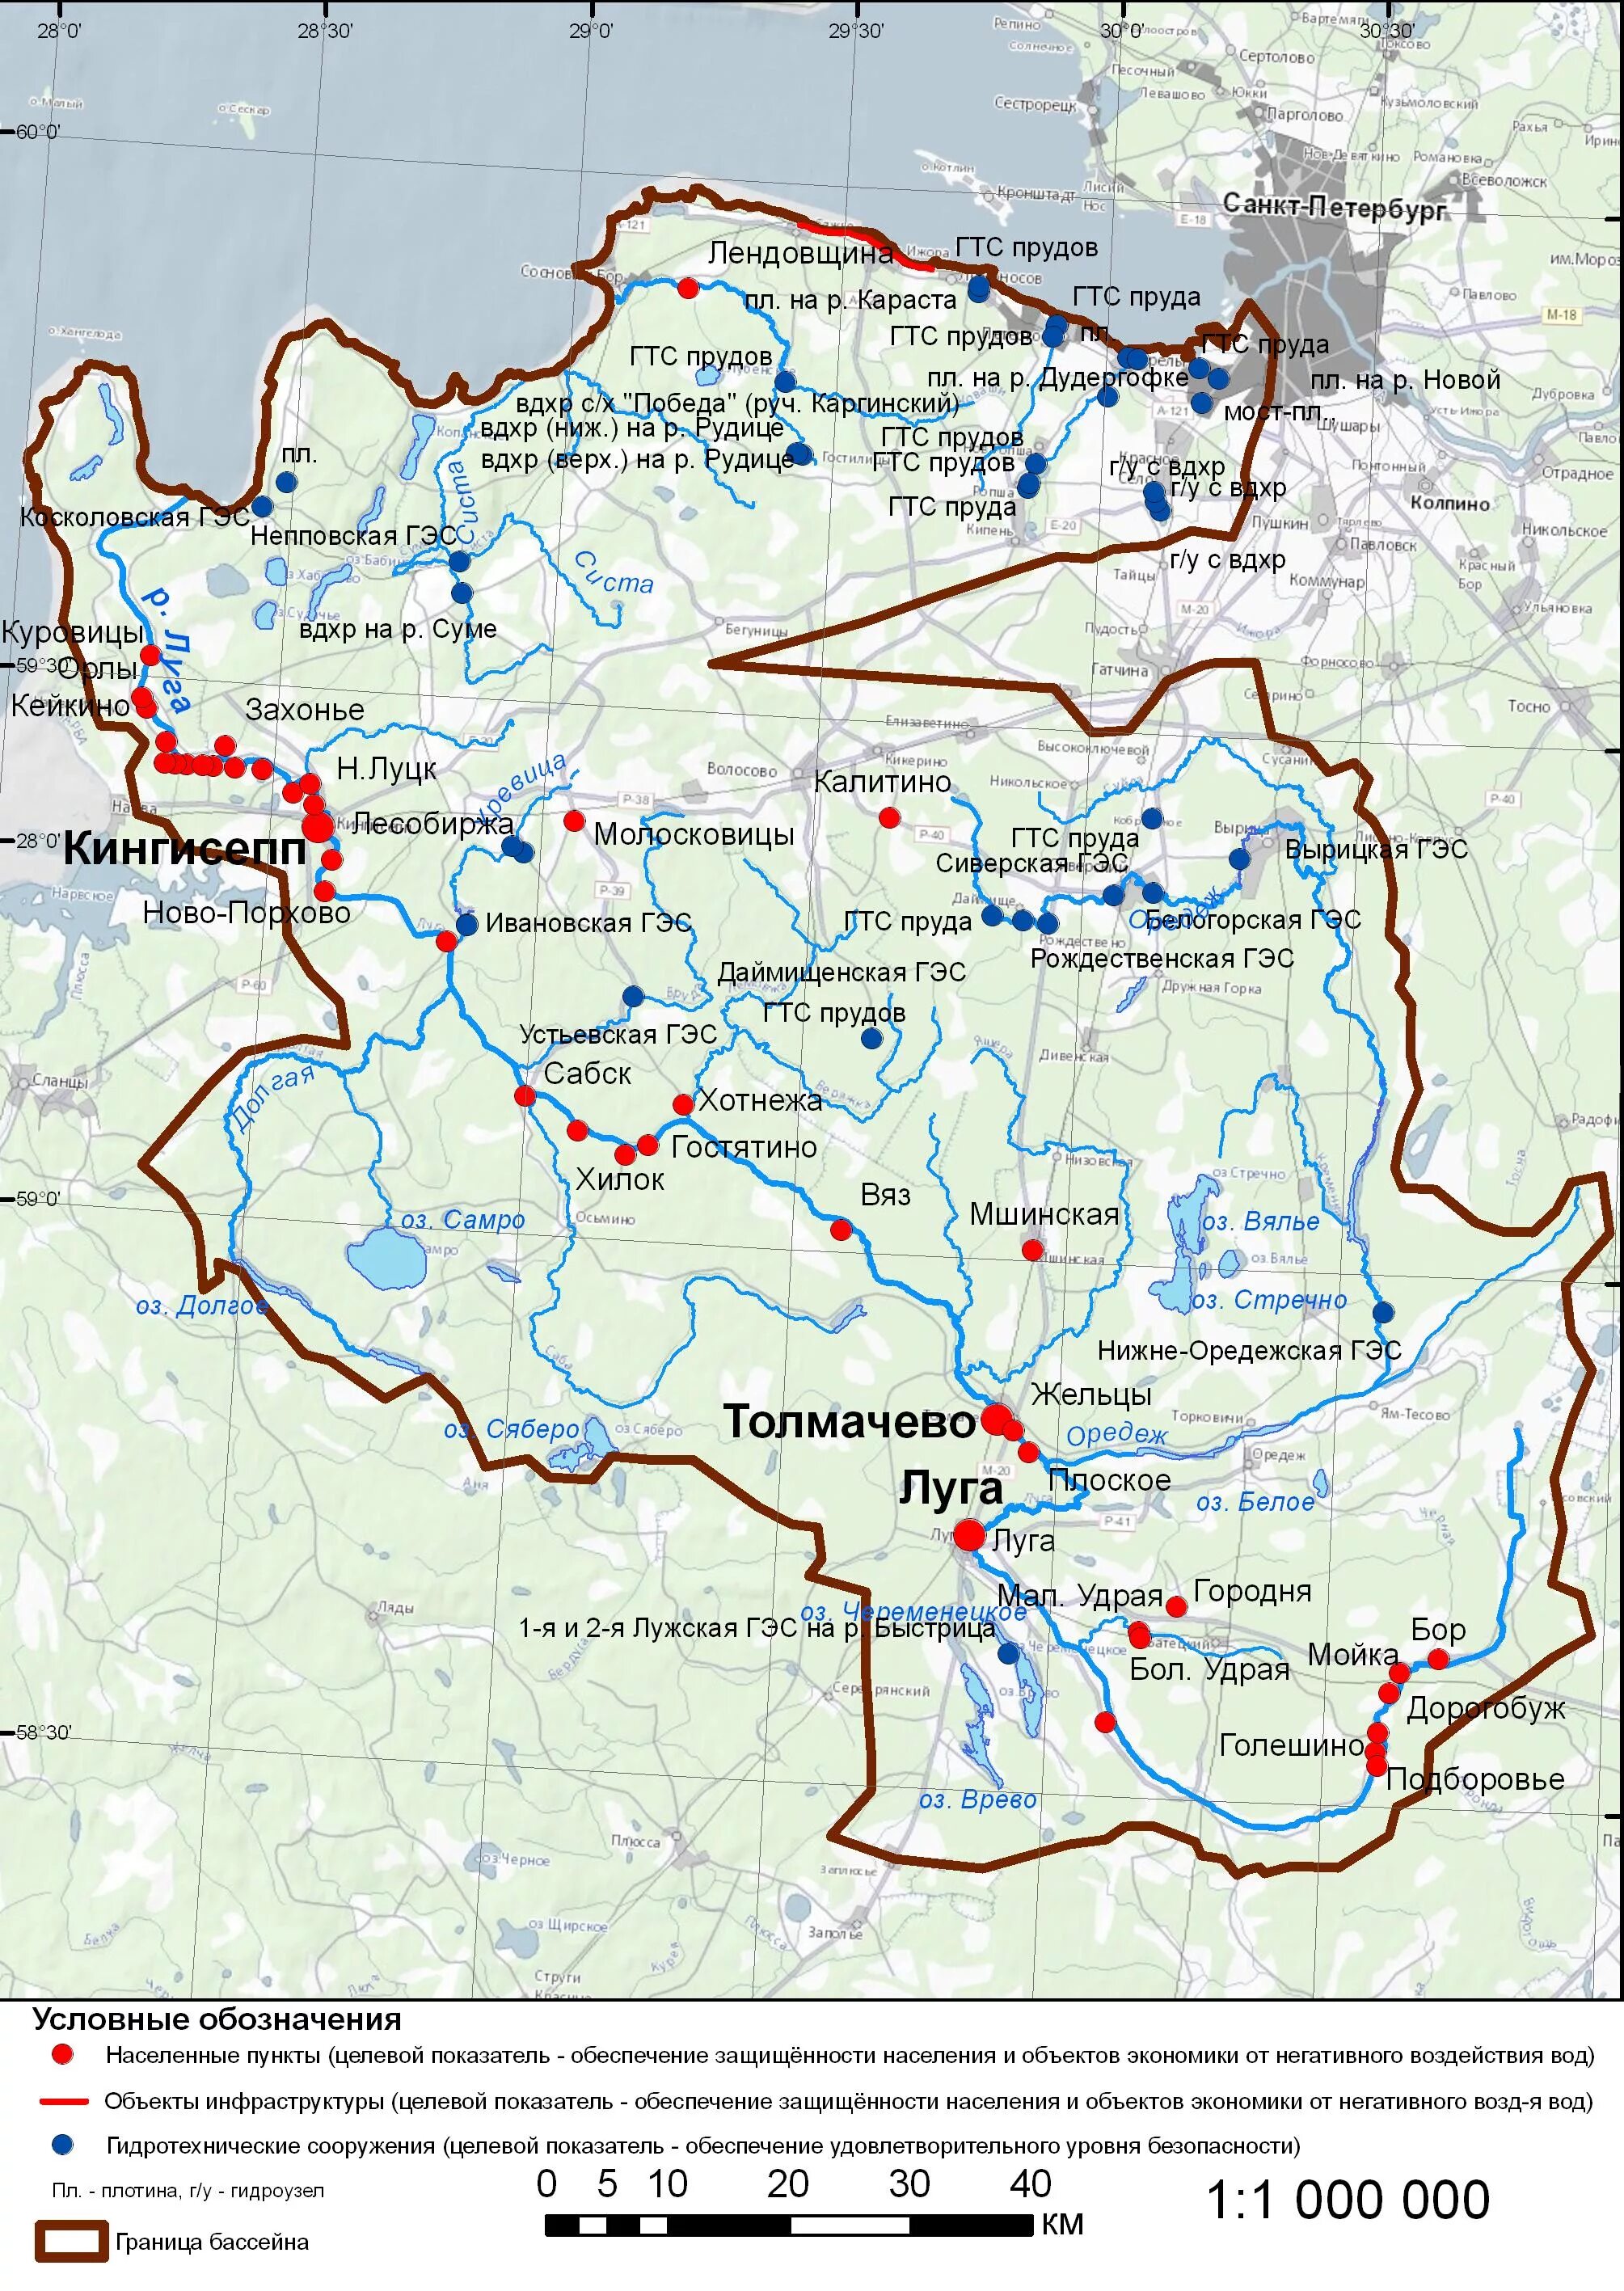 Река луга на карте. Сиверская ГЭС на карте. ГЭС на Оредеже на карте. Бассейн реки Луга. Старая финская ГЭС на карте.